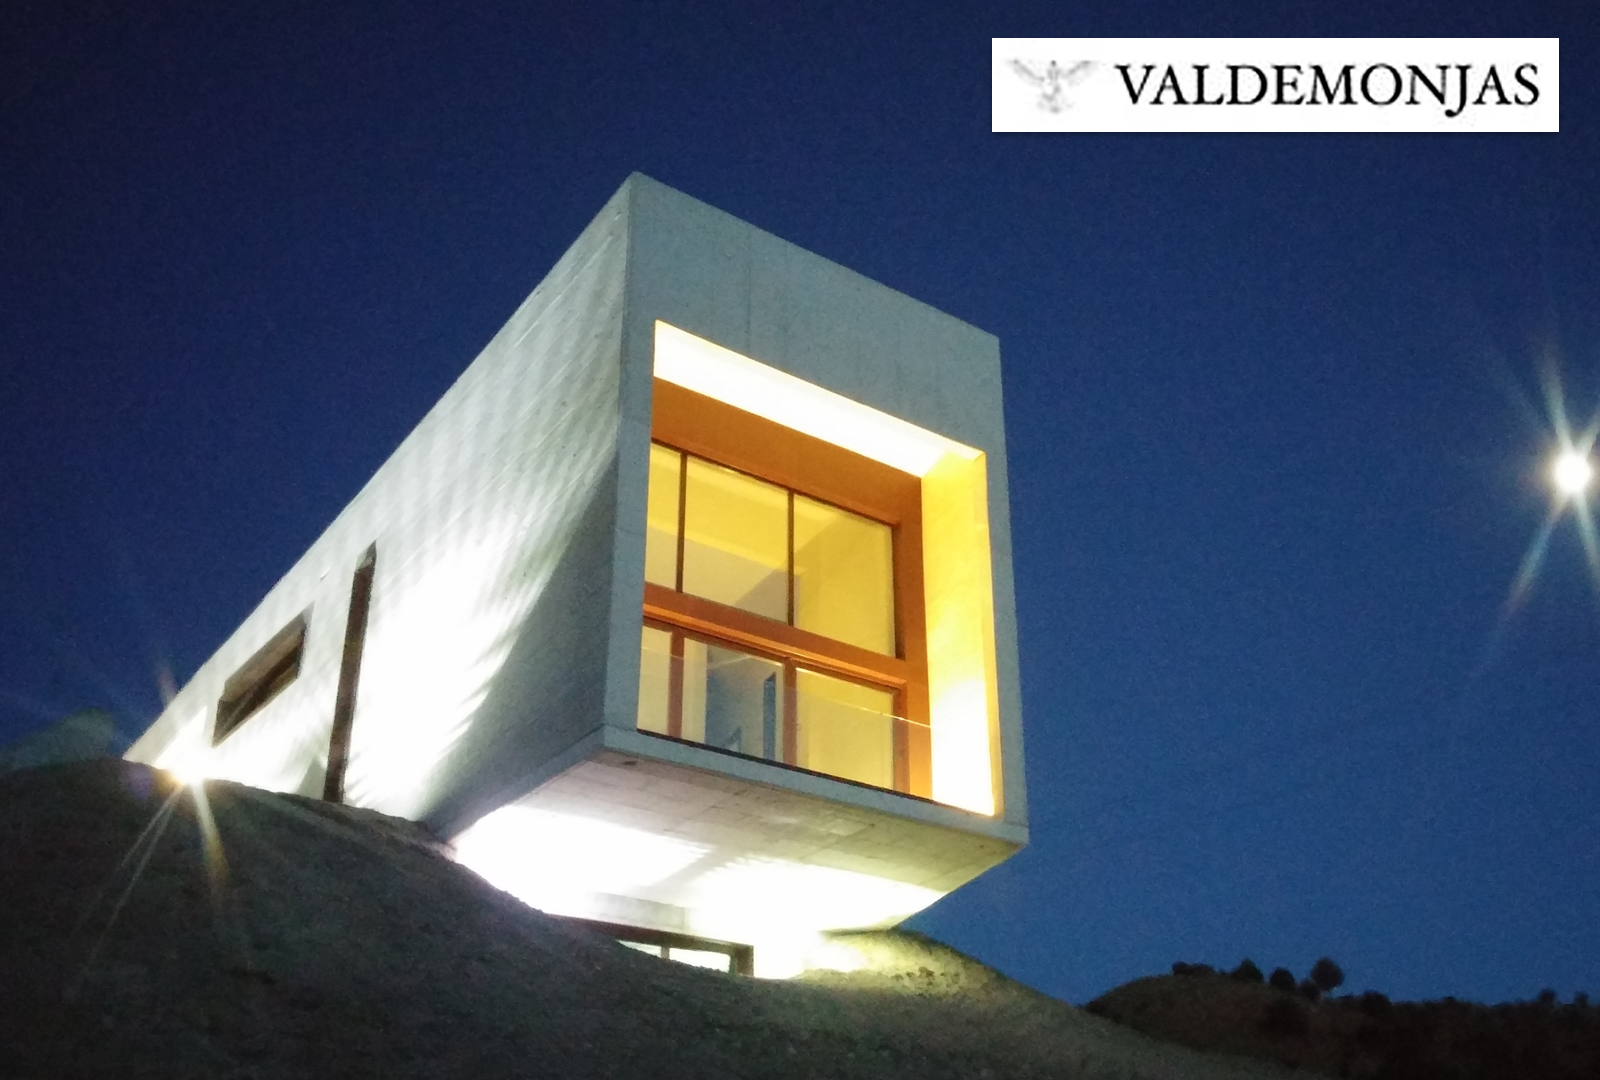 Valdemonjas, ganadora en los premios, Architizer A+. - VINOS DIFERENTES